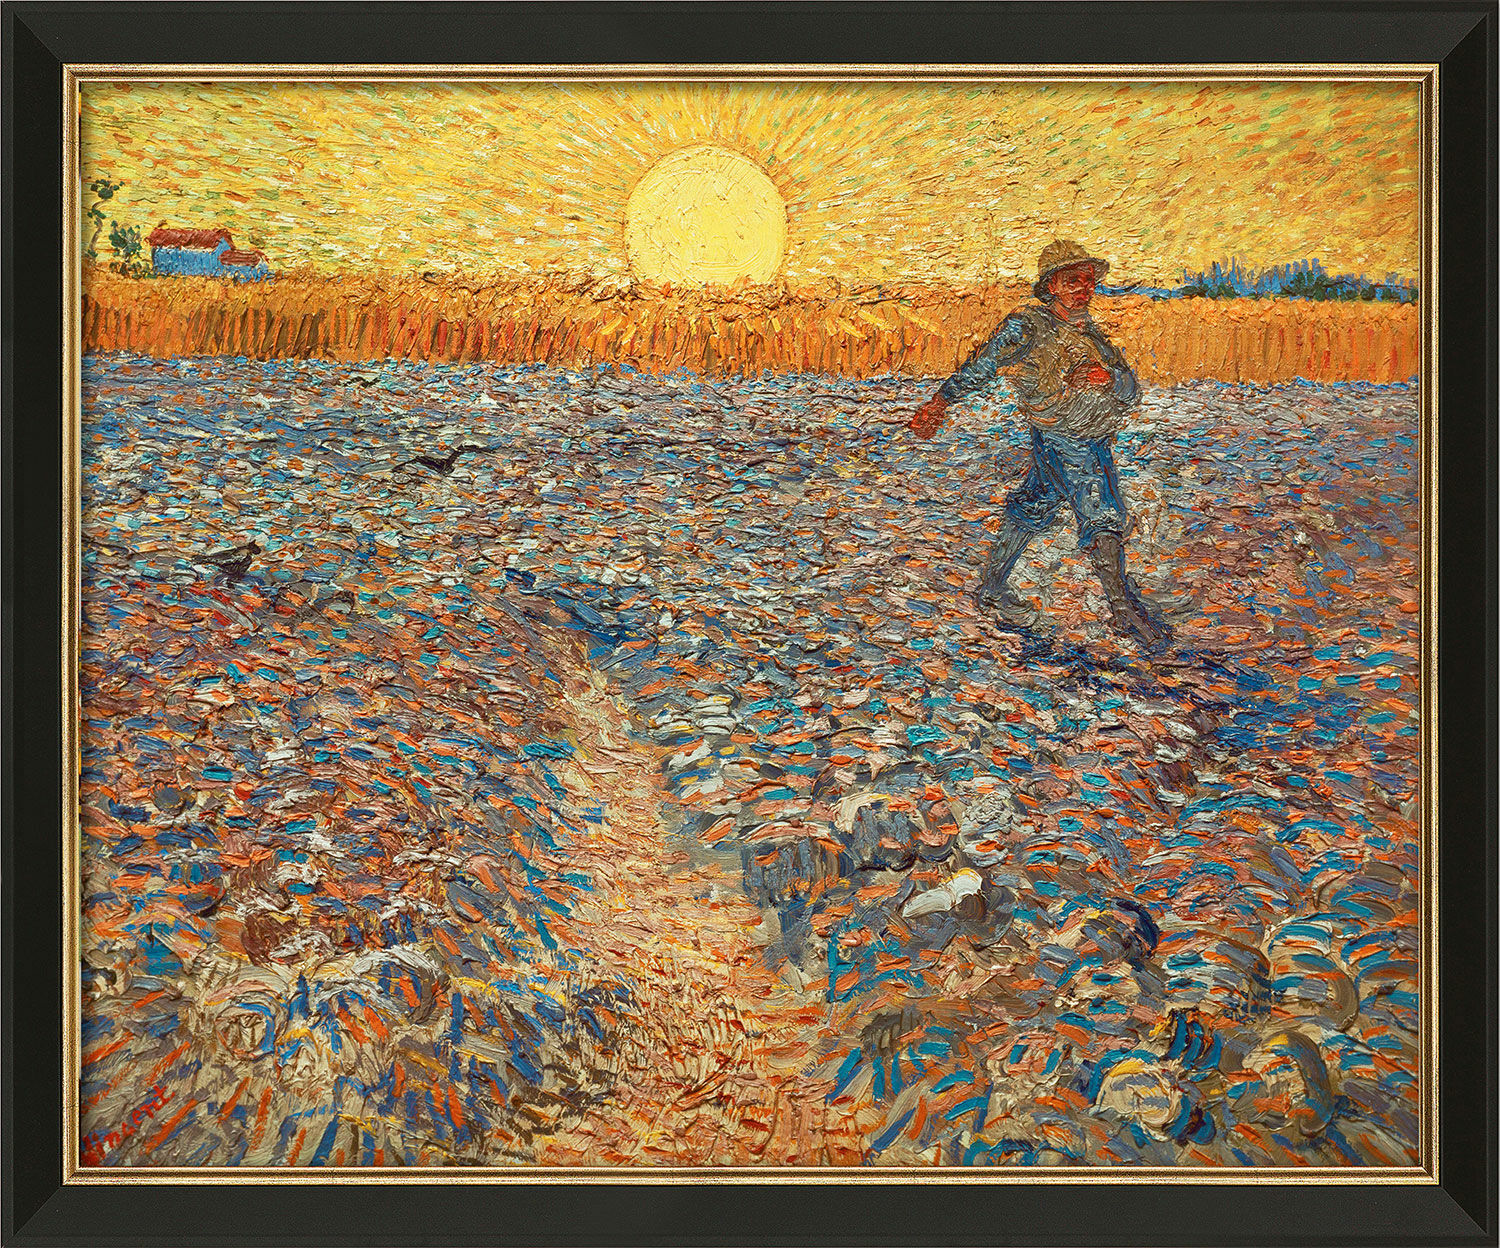 Tableau "Semeur au soleil couchant" (1888), encadré von Vincent van Gogh